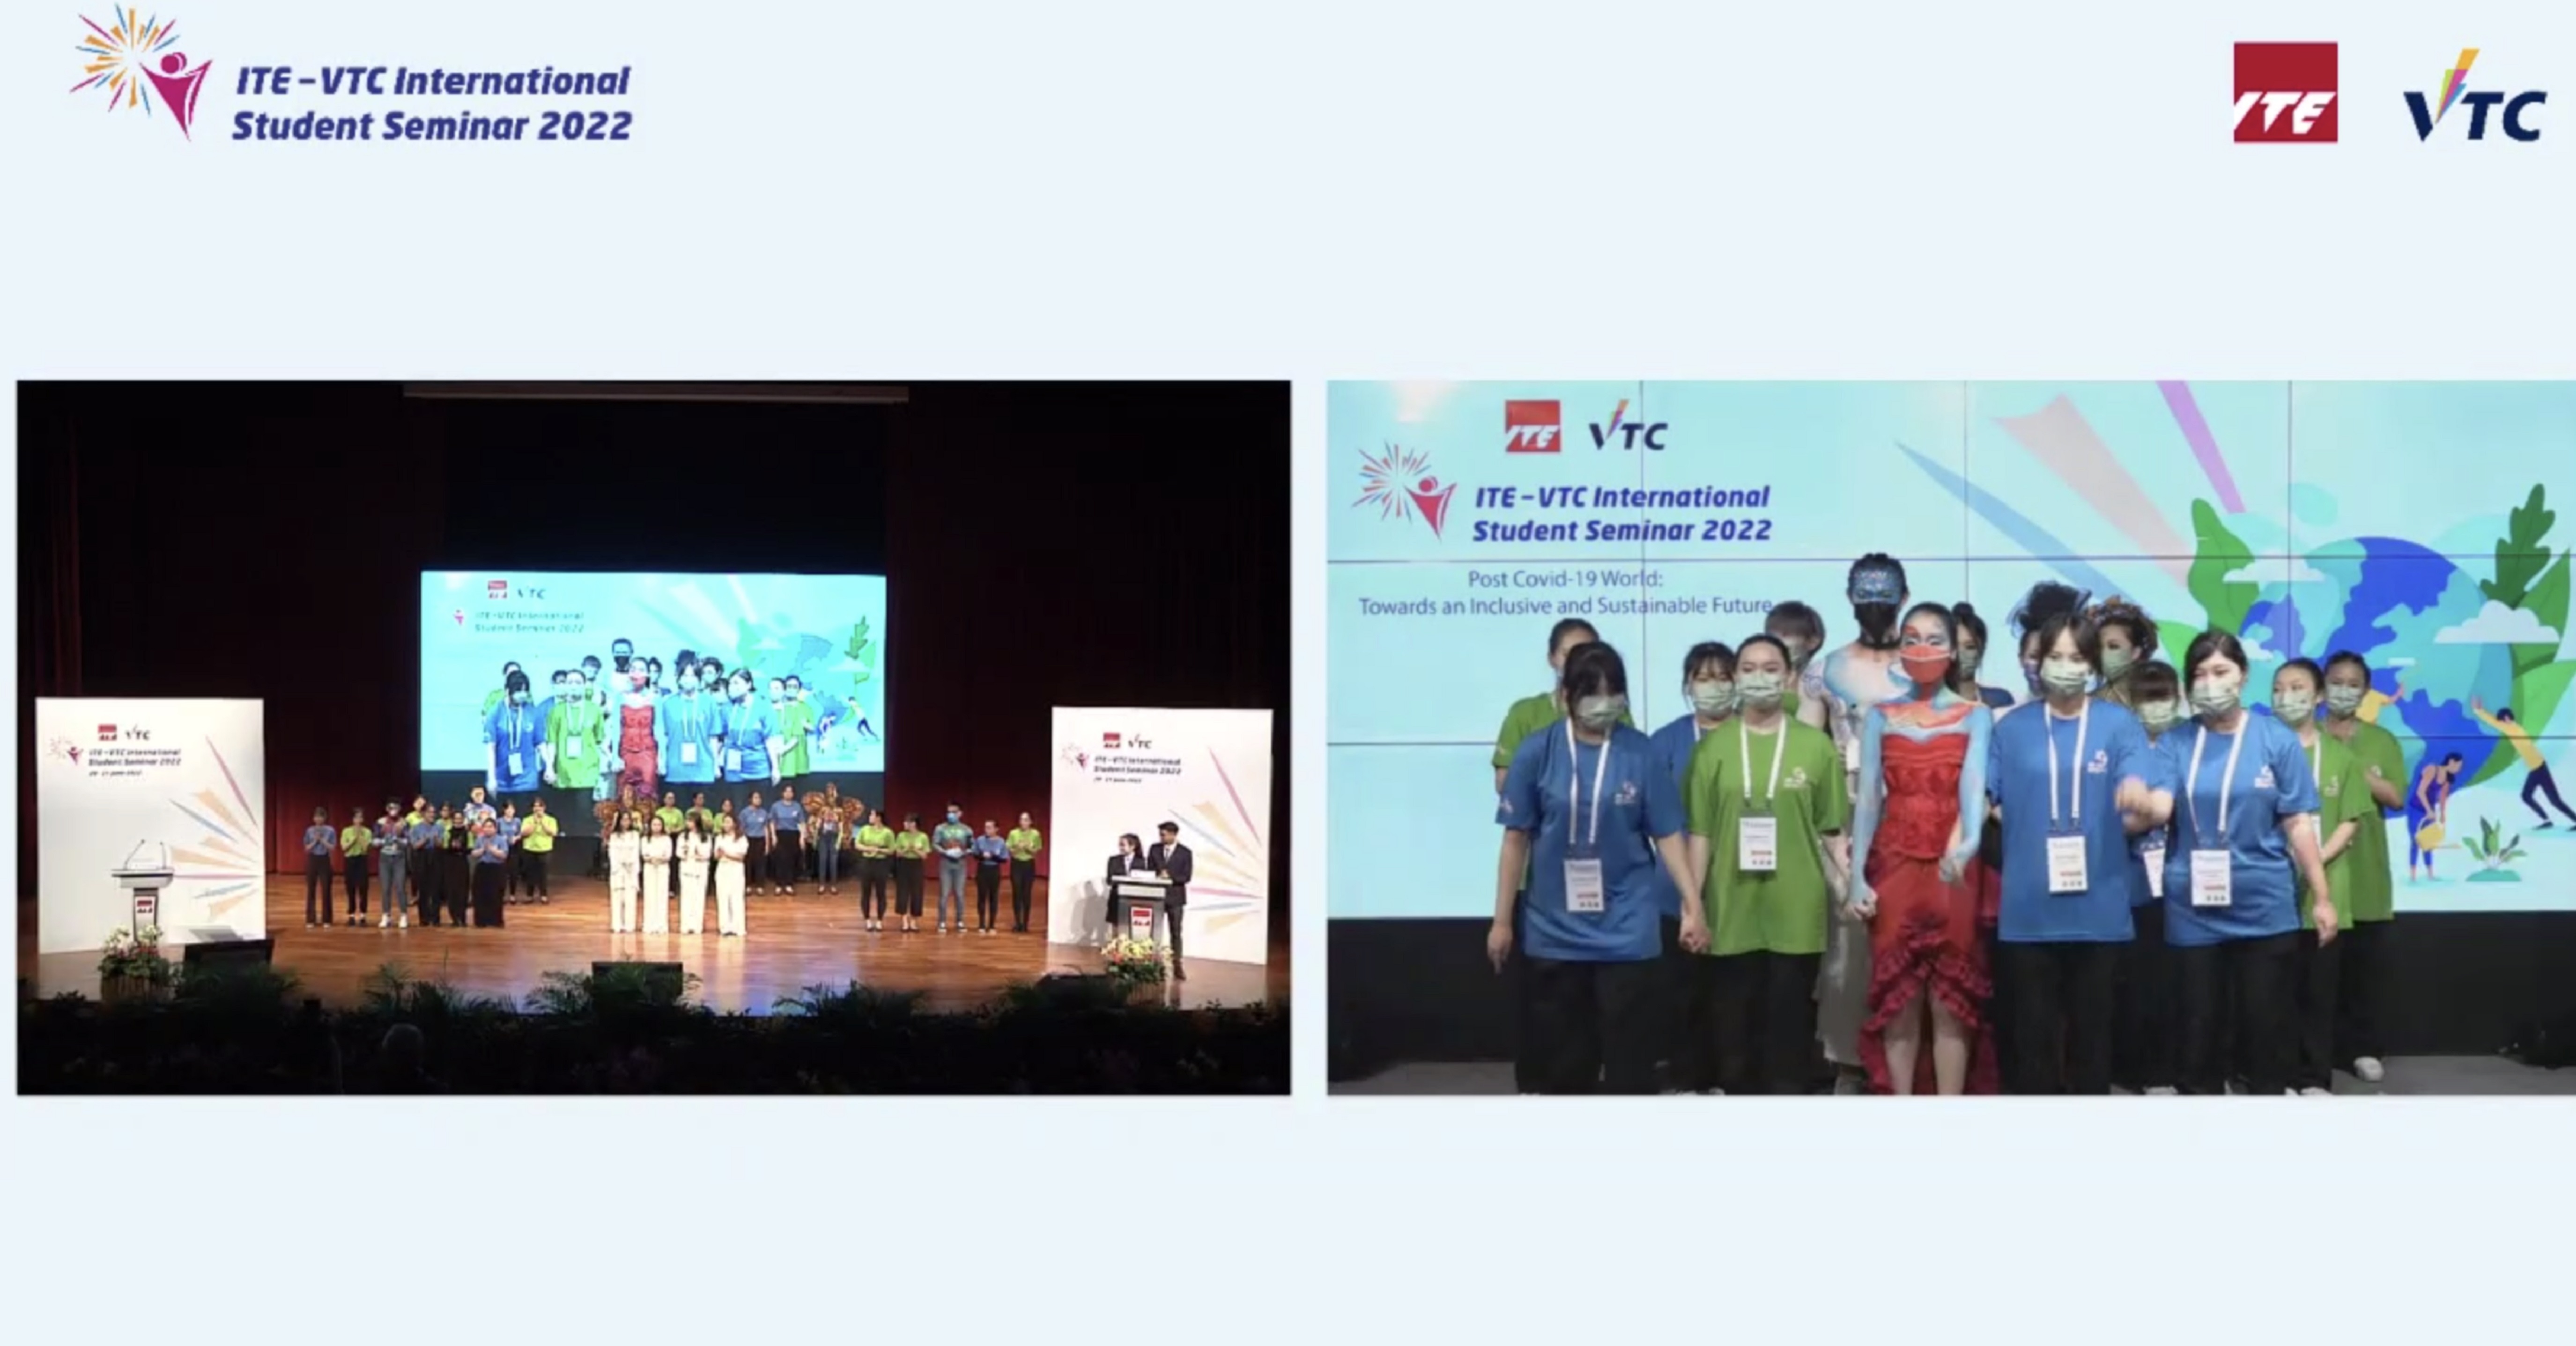 來自新加坡及香港等地的學生參與「ITE—VTC國際學生研討會2022」，透過視像方式交流在疫情後以創新科技，建設共融社會